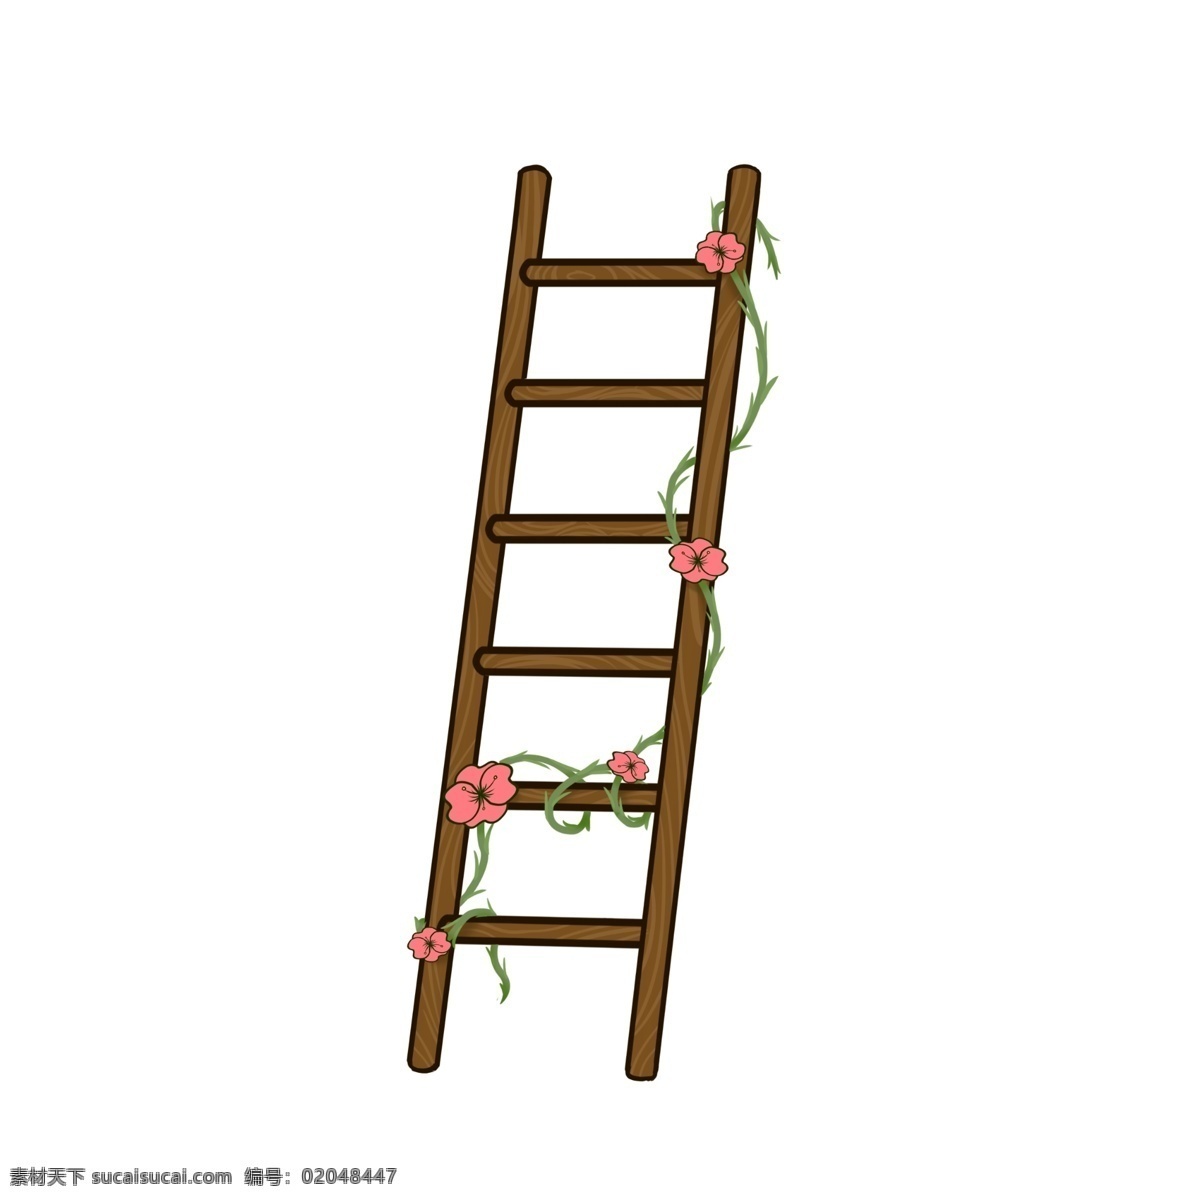 棕色 立体 插图 生活用品 简约立体 棕色楼梯 缠绕的植物 红色花瓣 立体花藤 花藤插画 攀爬工具